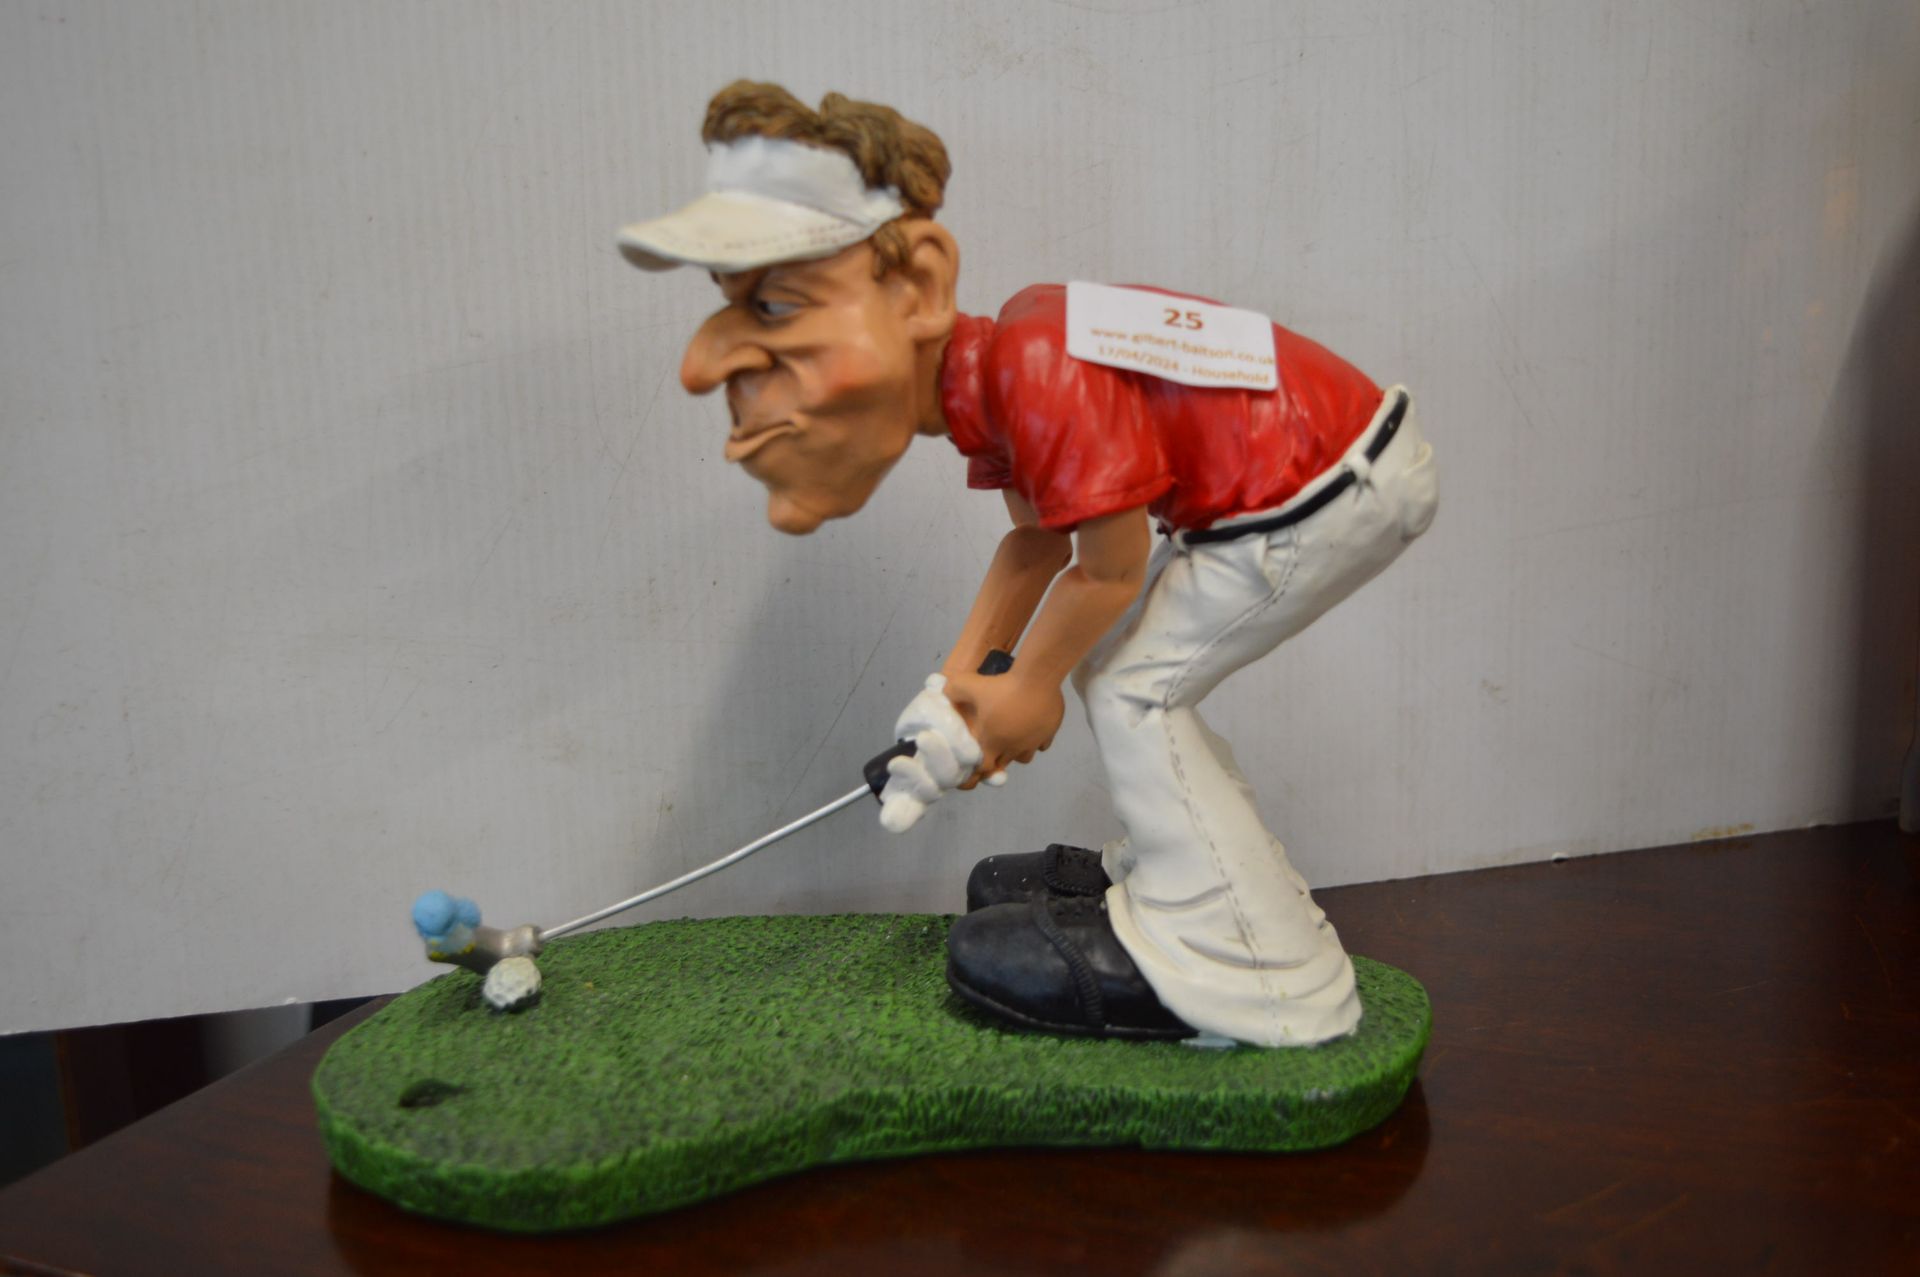 Humorous Golfing Figure - Image 2 of 2